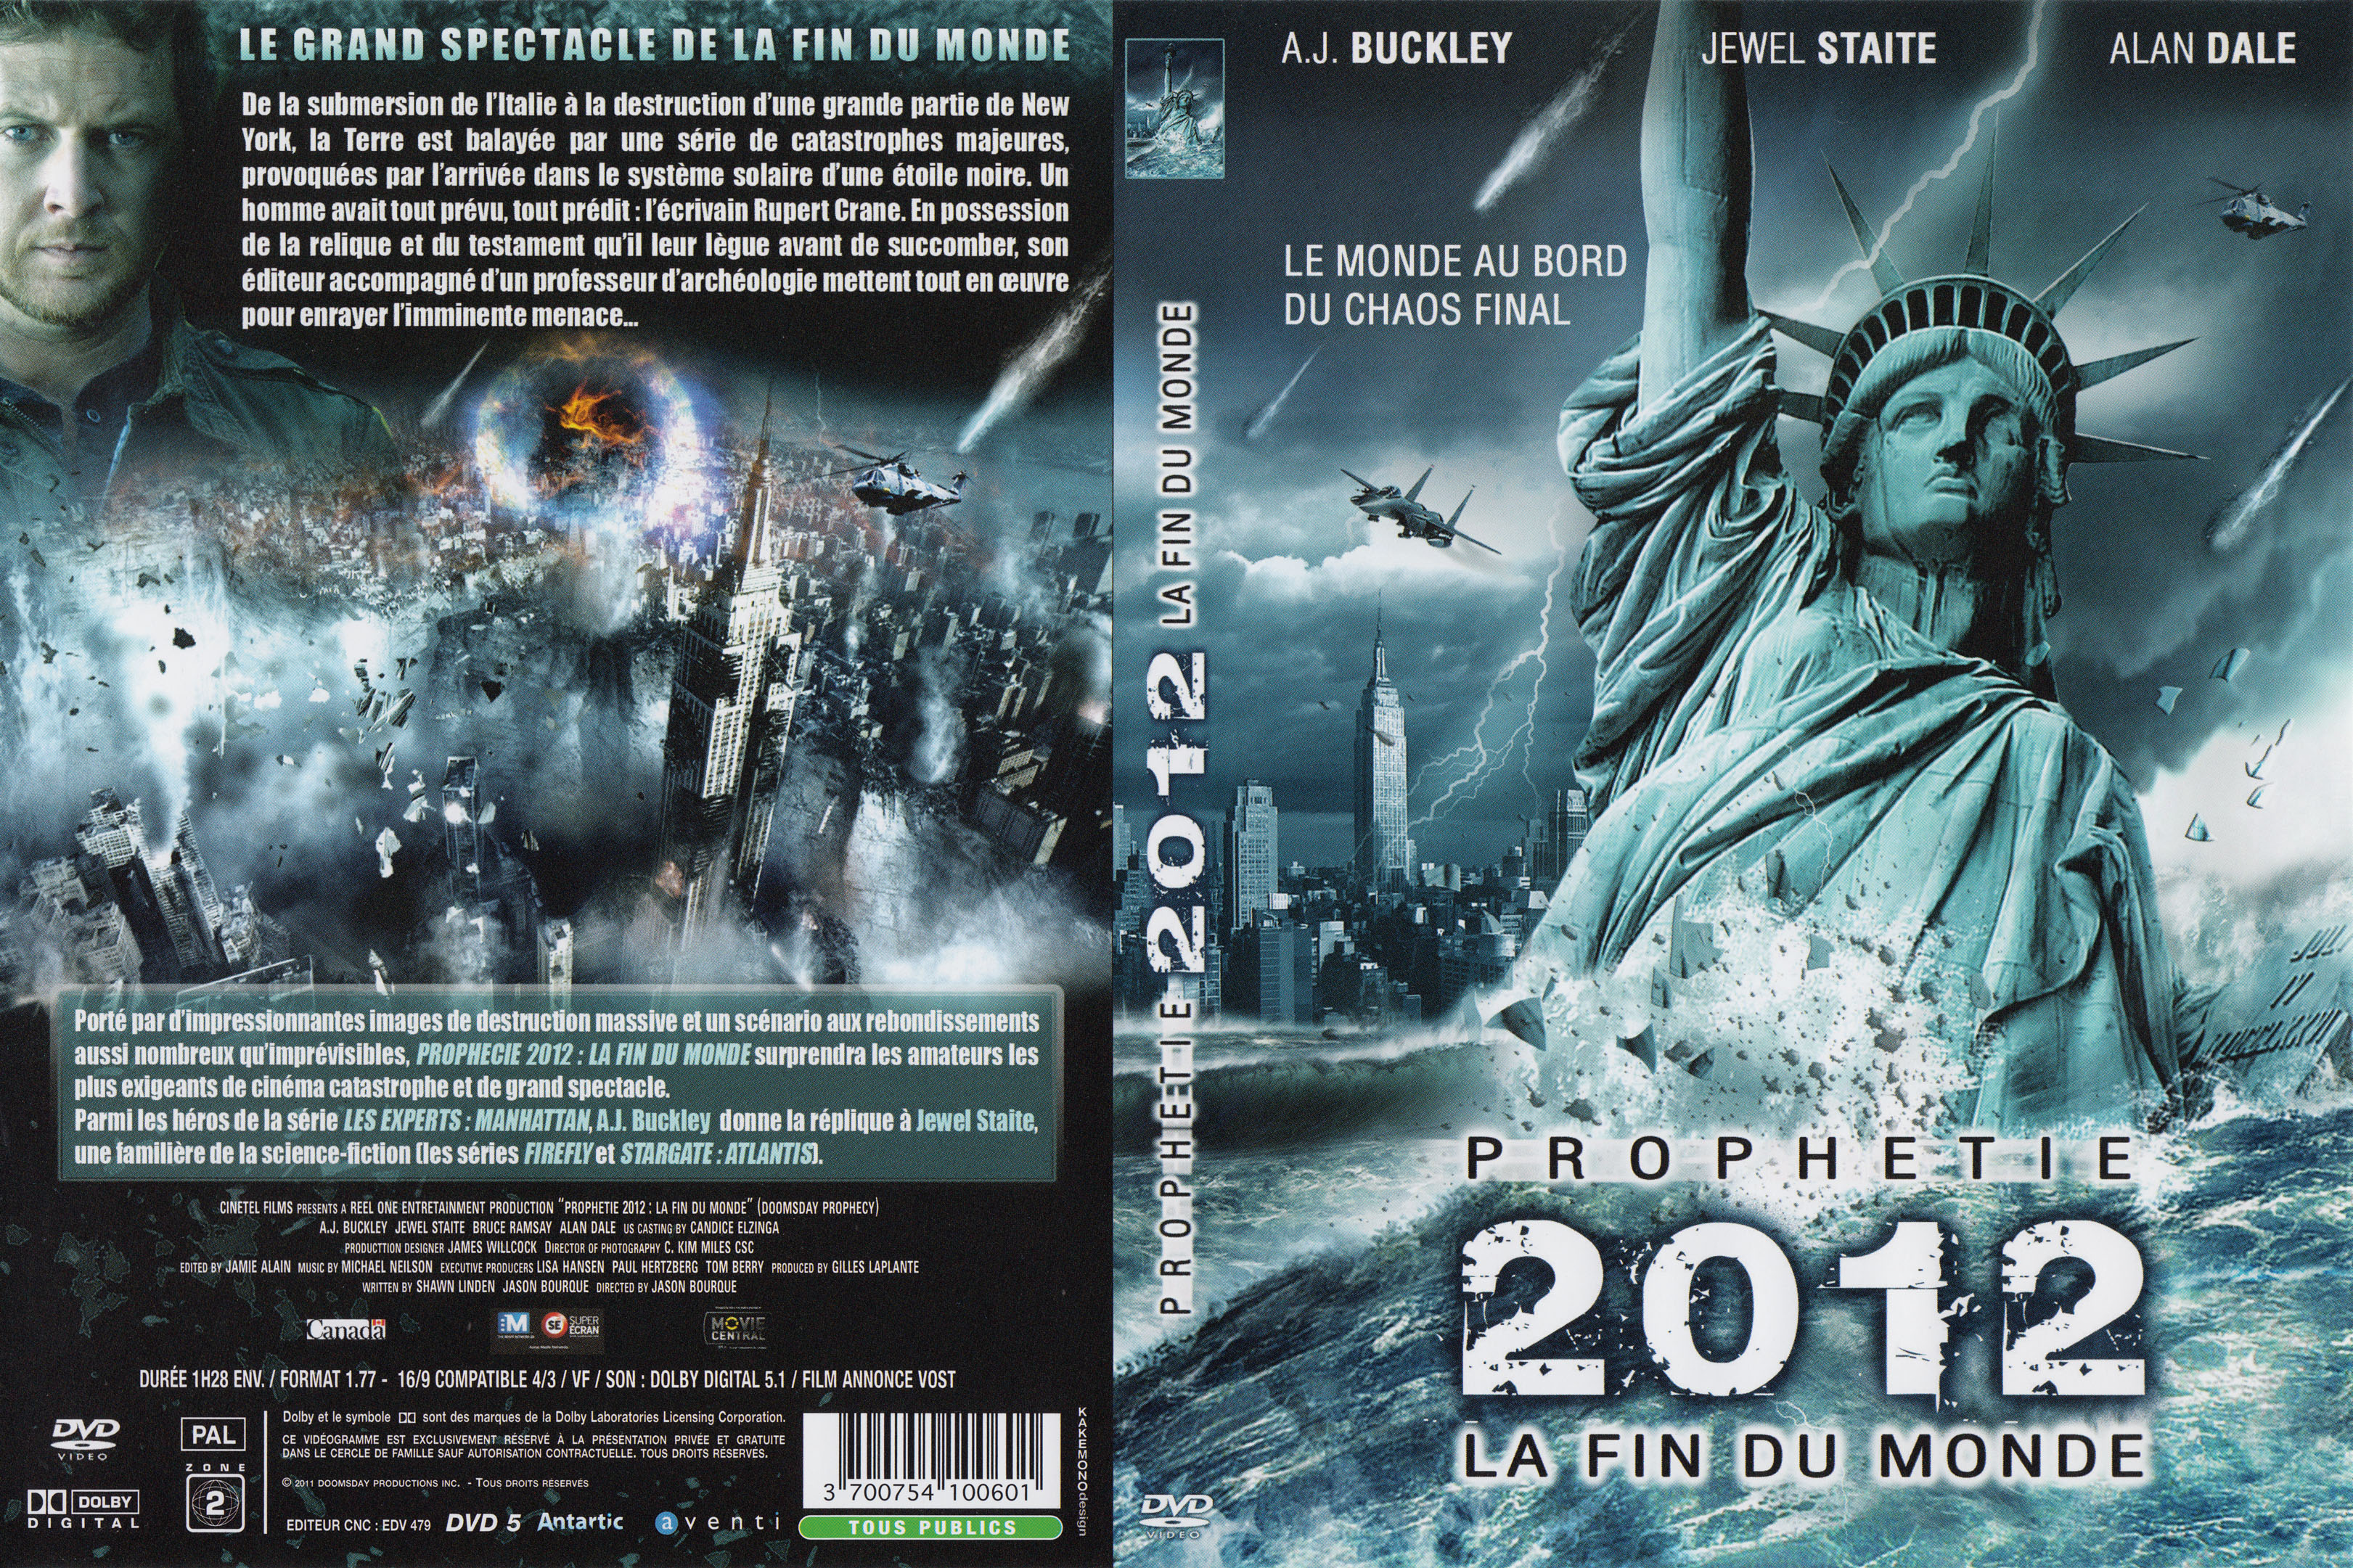 Jaquette DVD Prophtie 2012 la fin du monde